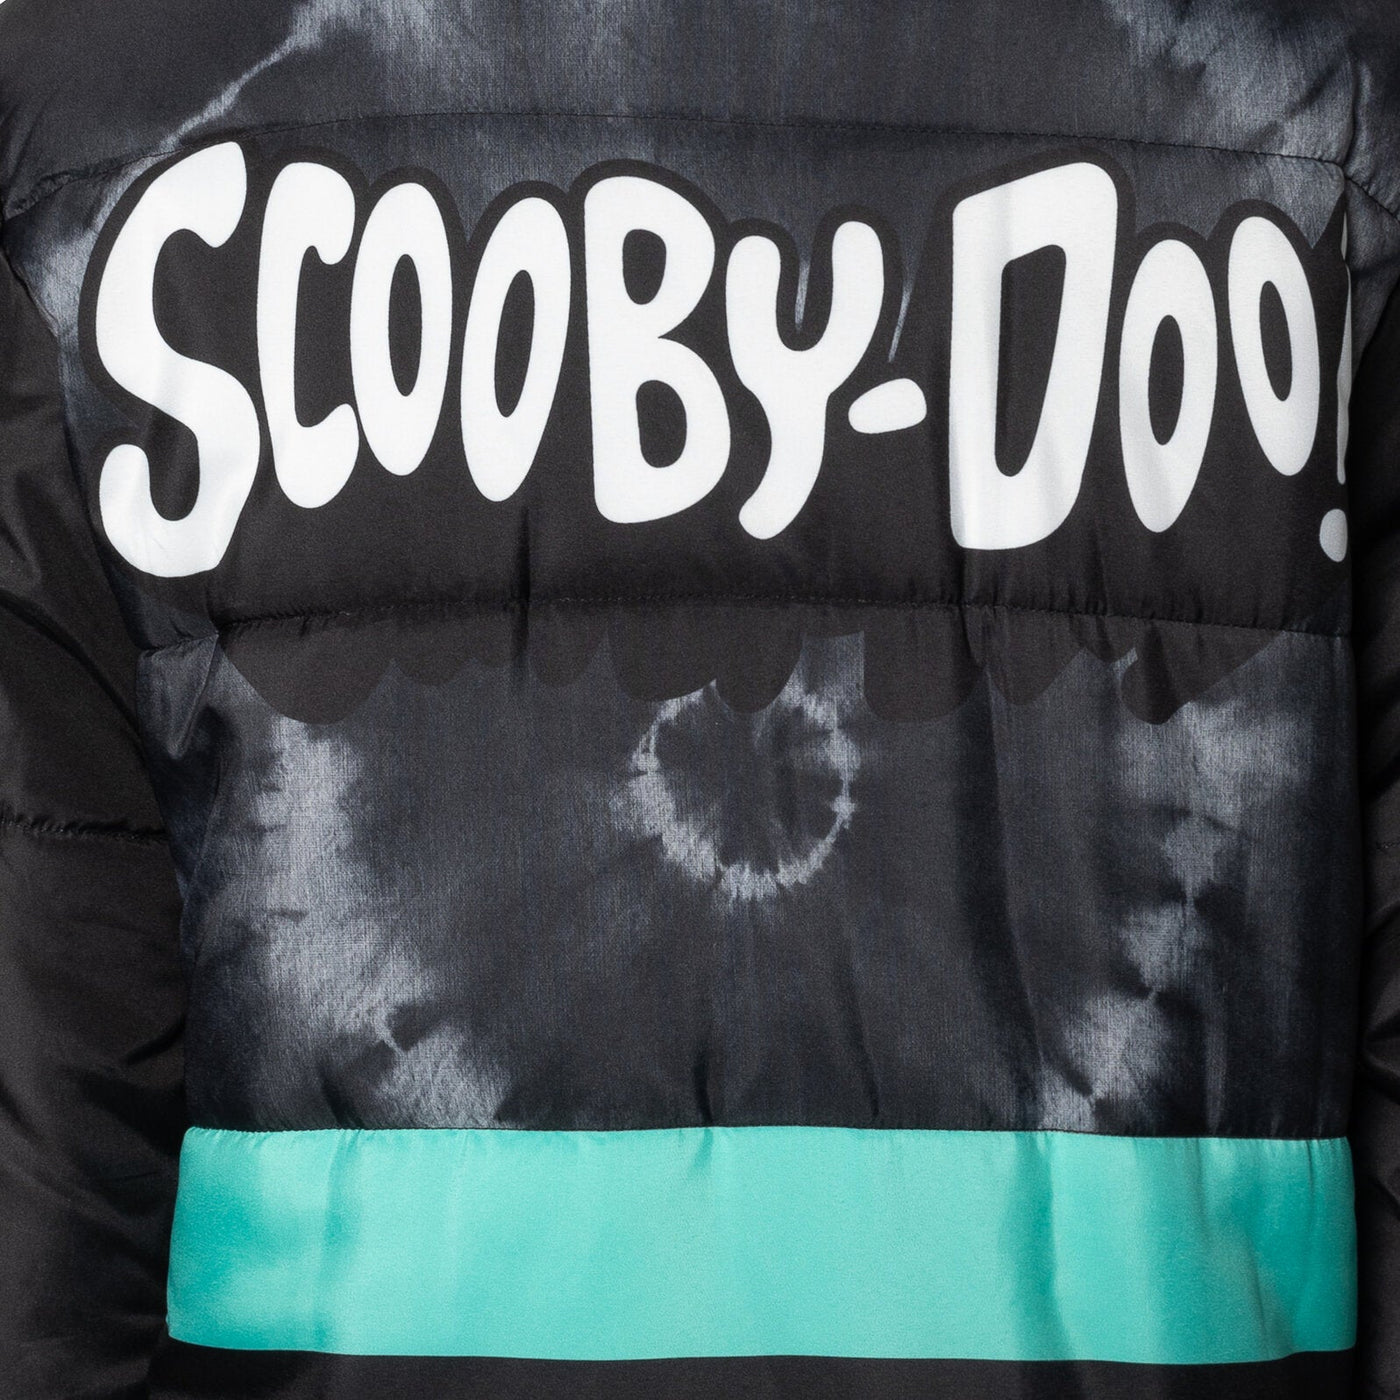 Warner Bros. Scooby Doo Zip Up Winter Coat Puffer Jacket - imagikids